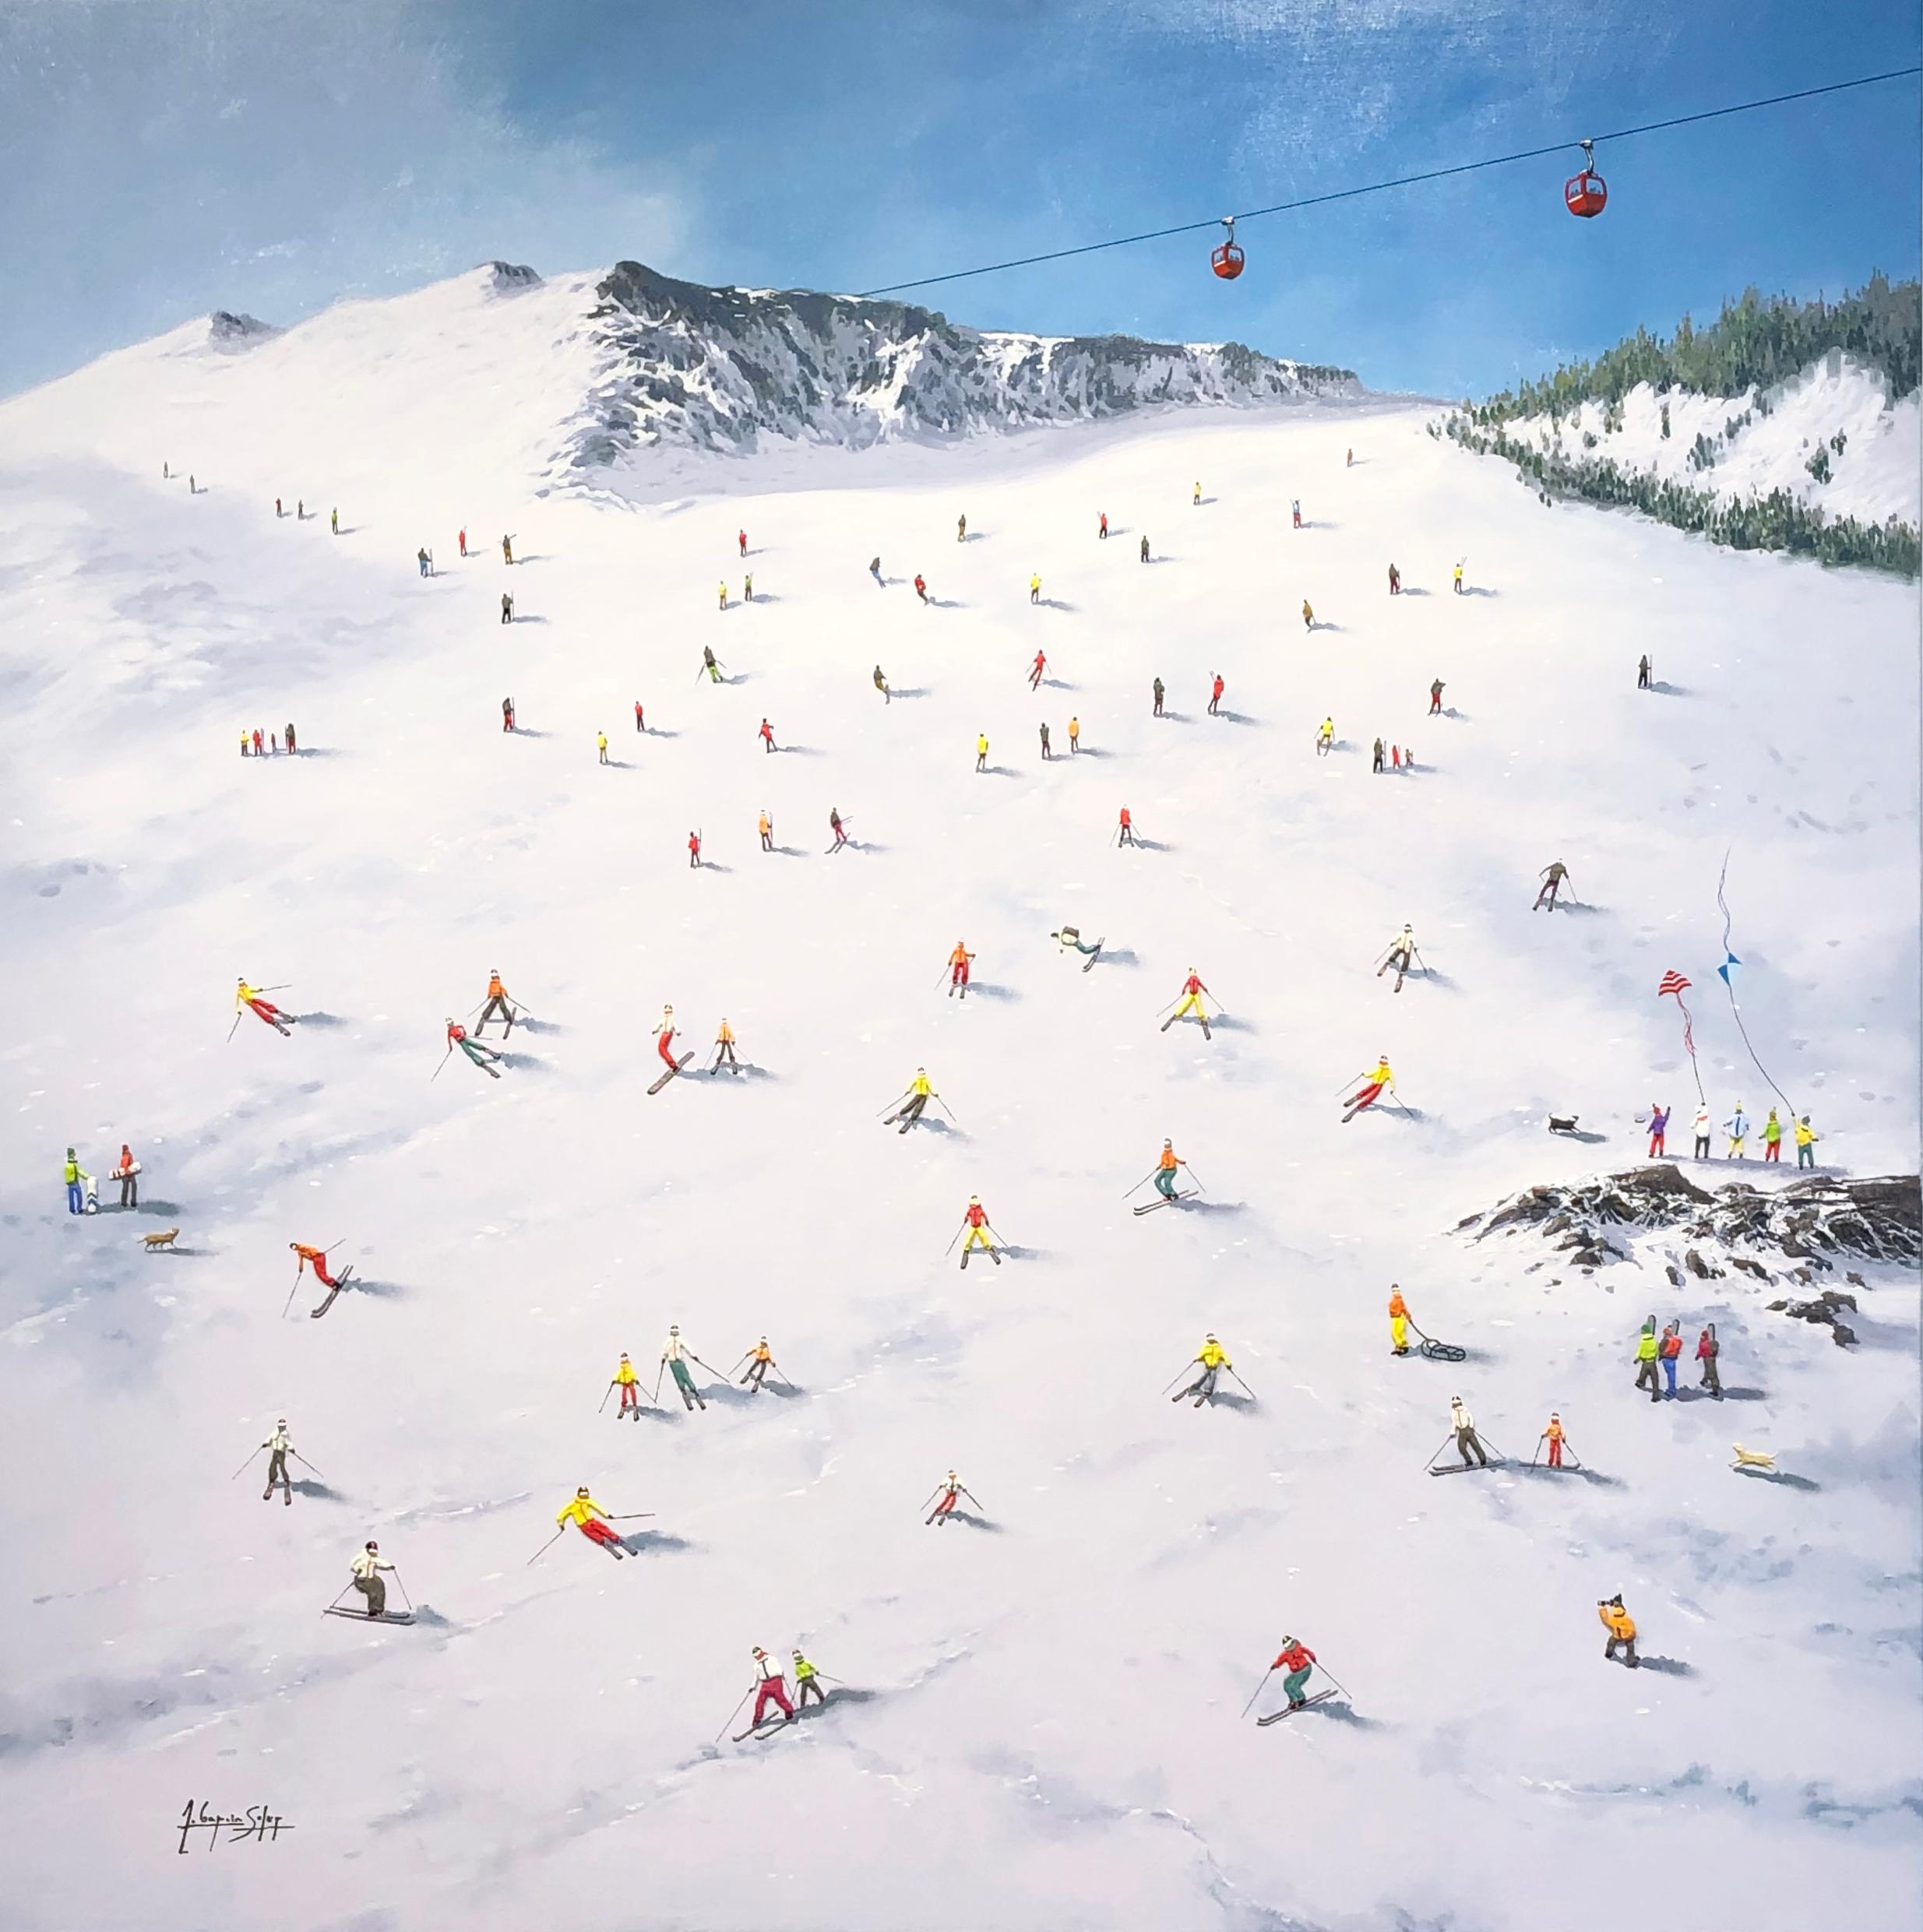 Cette œuvre joyeuse et fantaisiste, "Snow Day", est une peinture mixte sur toile de 39x39 réalisée par l'artiste Antonio Soler, qui capture une scène de foule de skieurs sur une piste gelée. Vêtus de vestes bouffantes et de pantalons de neige